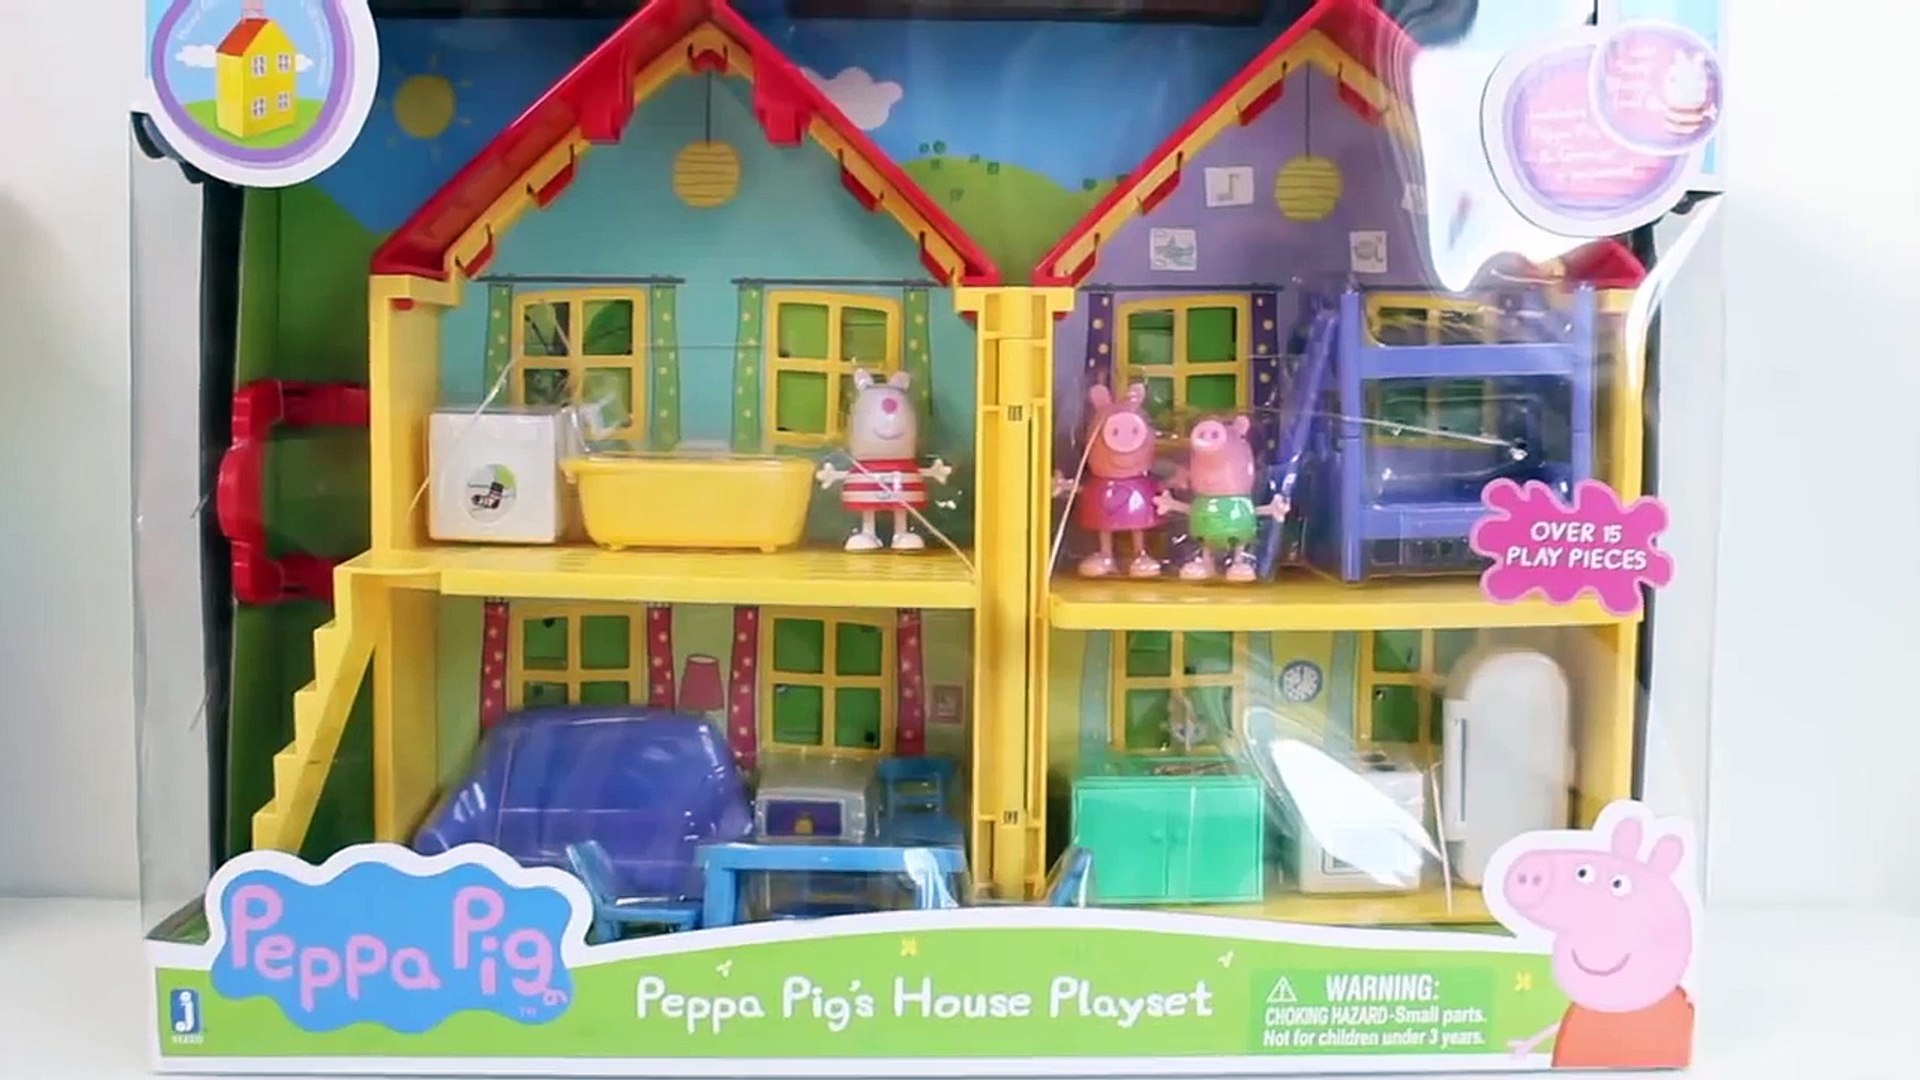 La Casa de Peppa Pig